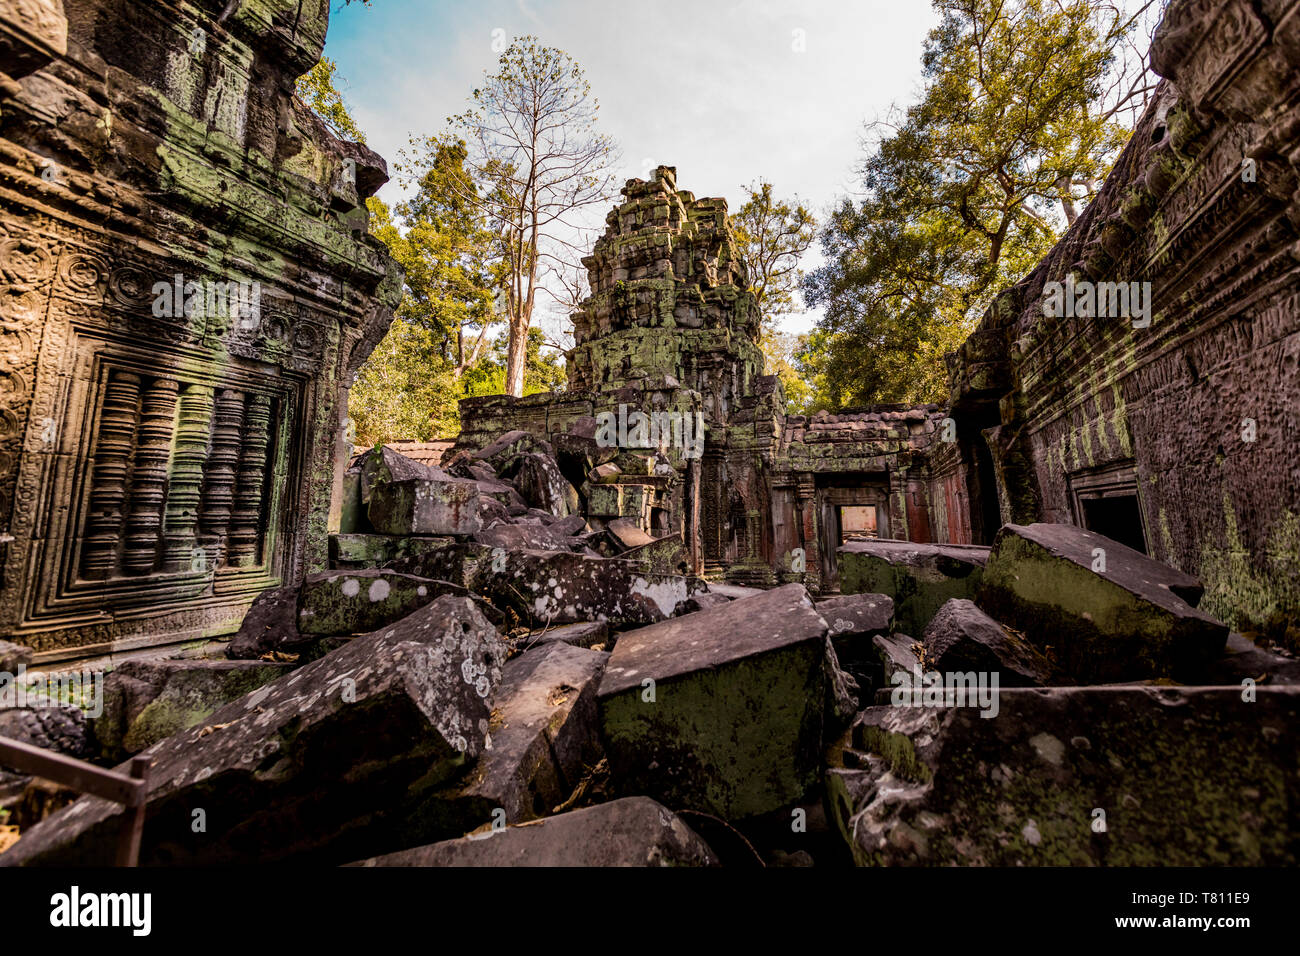 Angkor Wat, templi di Angkor, Sito Patrimonio Mondiale dell'UNESCO, Siem Reap, Cambogia, Indocina, Asia sud-orientale, Asia Foto Stock